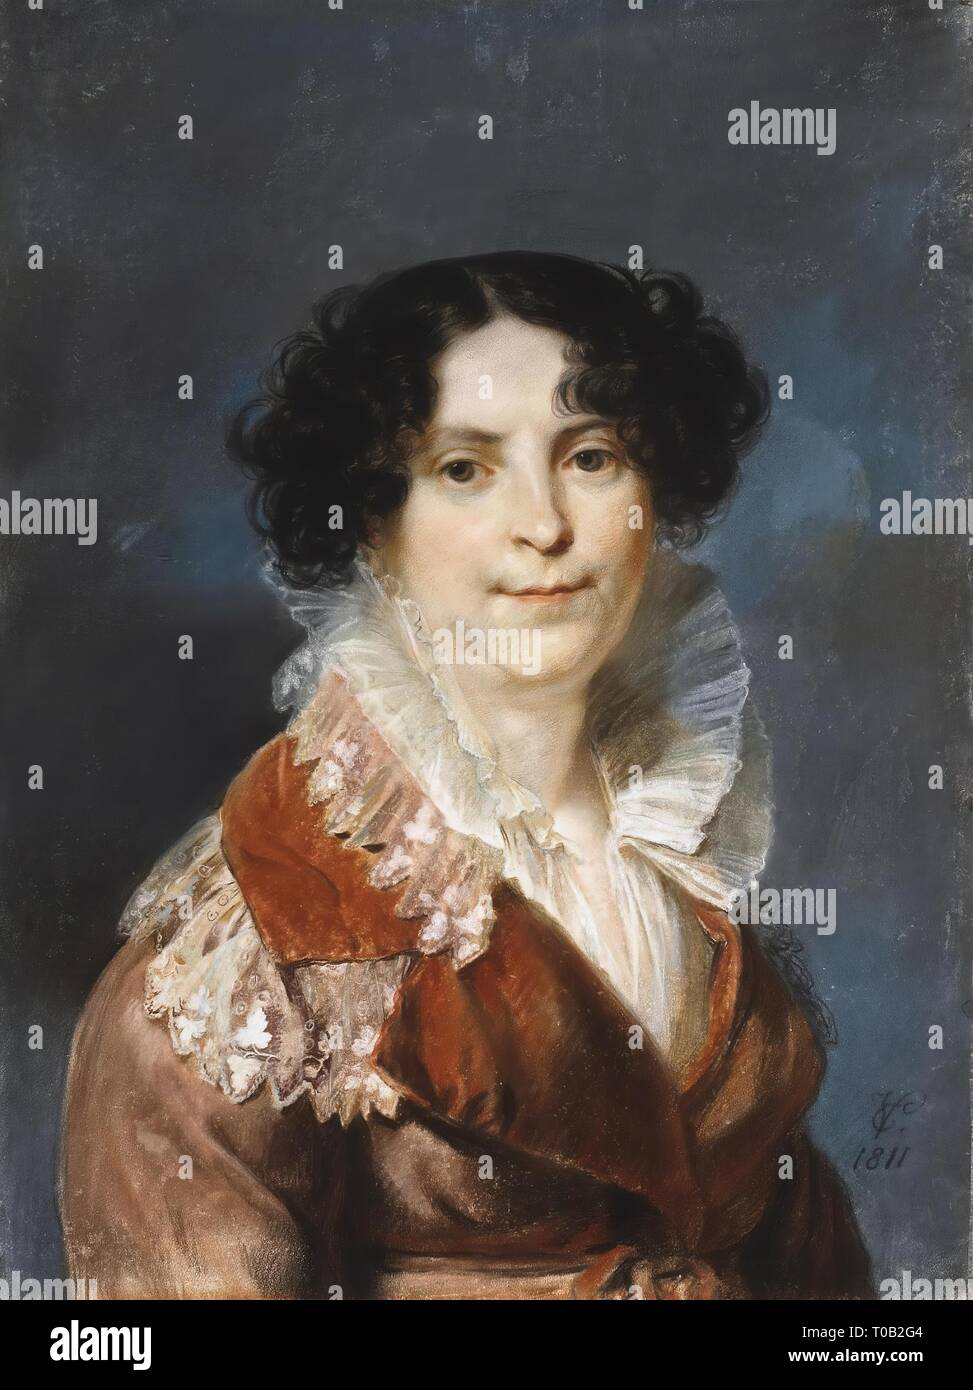 " Ritratto di una donna". Germania, 1811. Dimensioni: 62x64 cm. Museo: Membro Hermitage di San Pietroburgo. Autore: CARL CHRISTIAN VOGEL VON VOGELSTEIN. Foto Stock